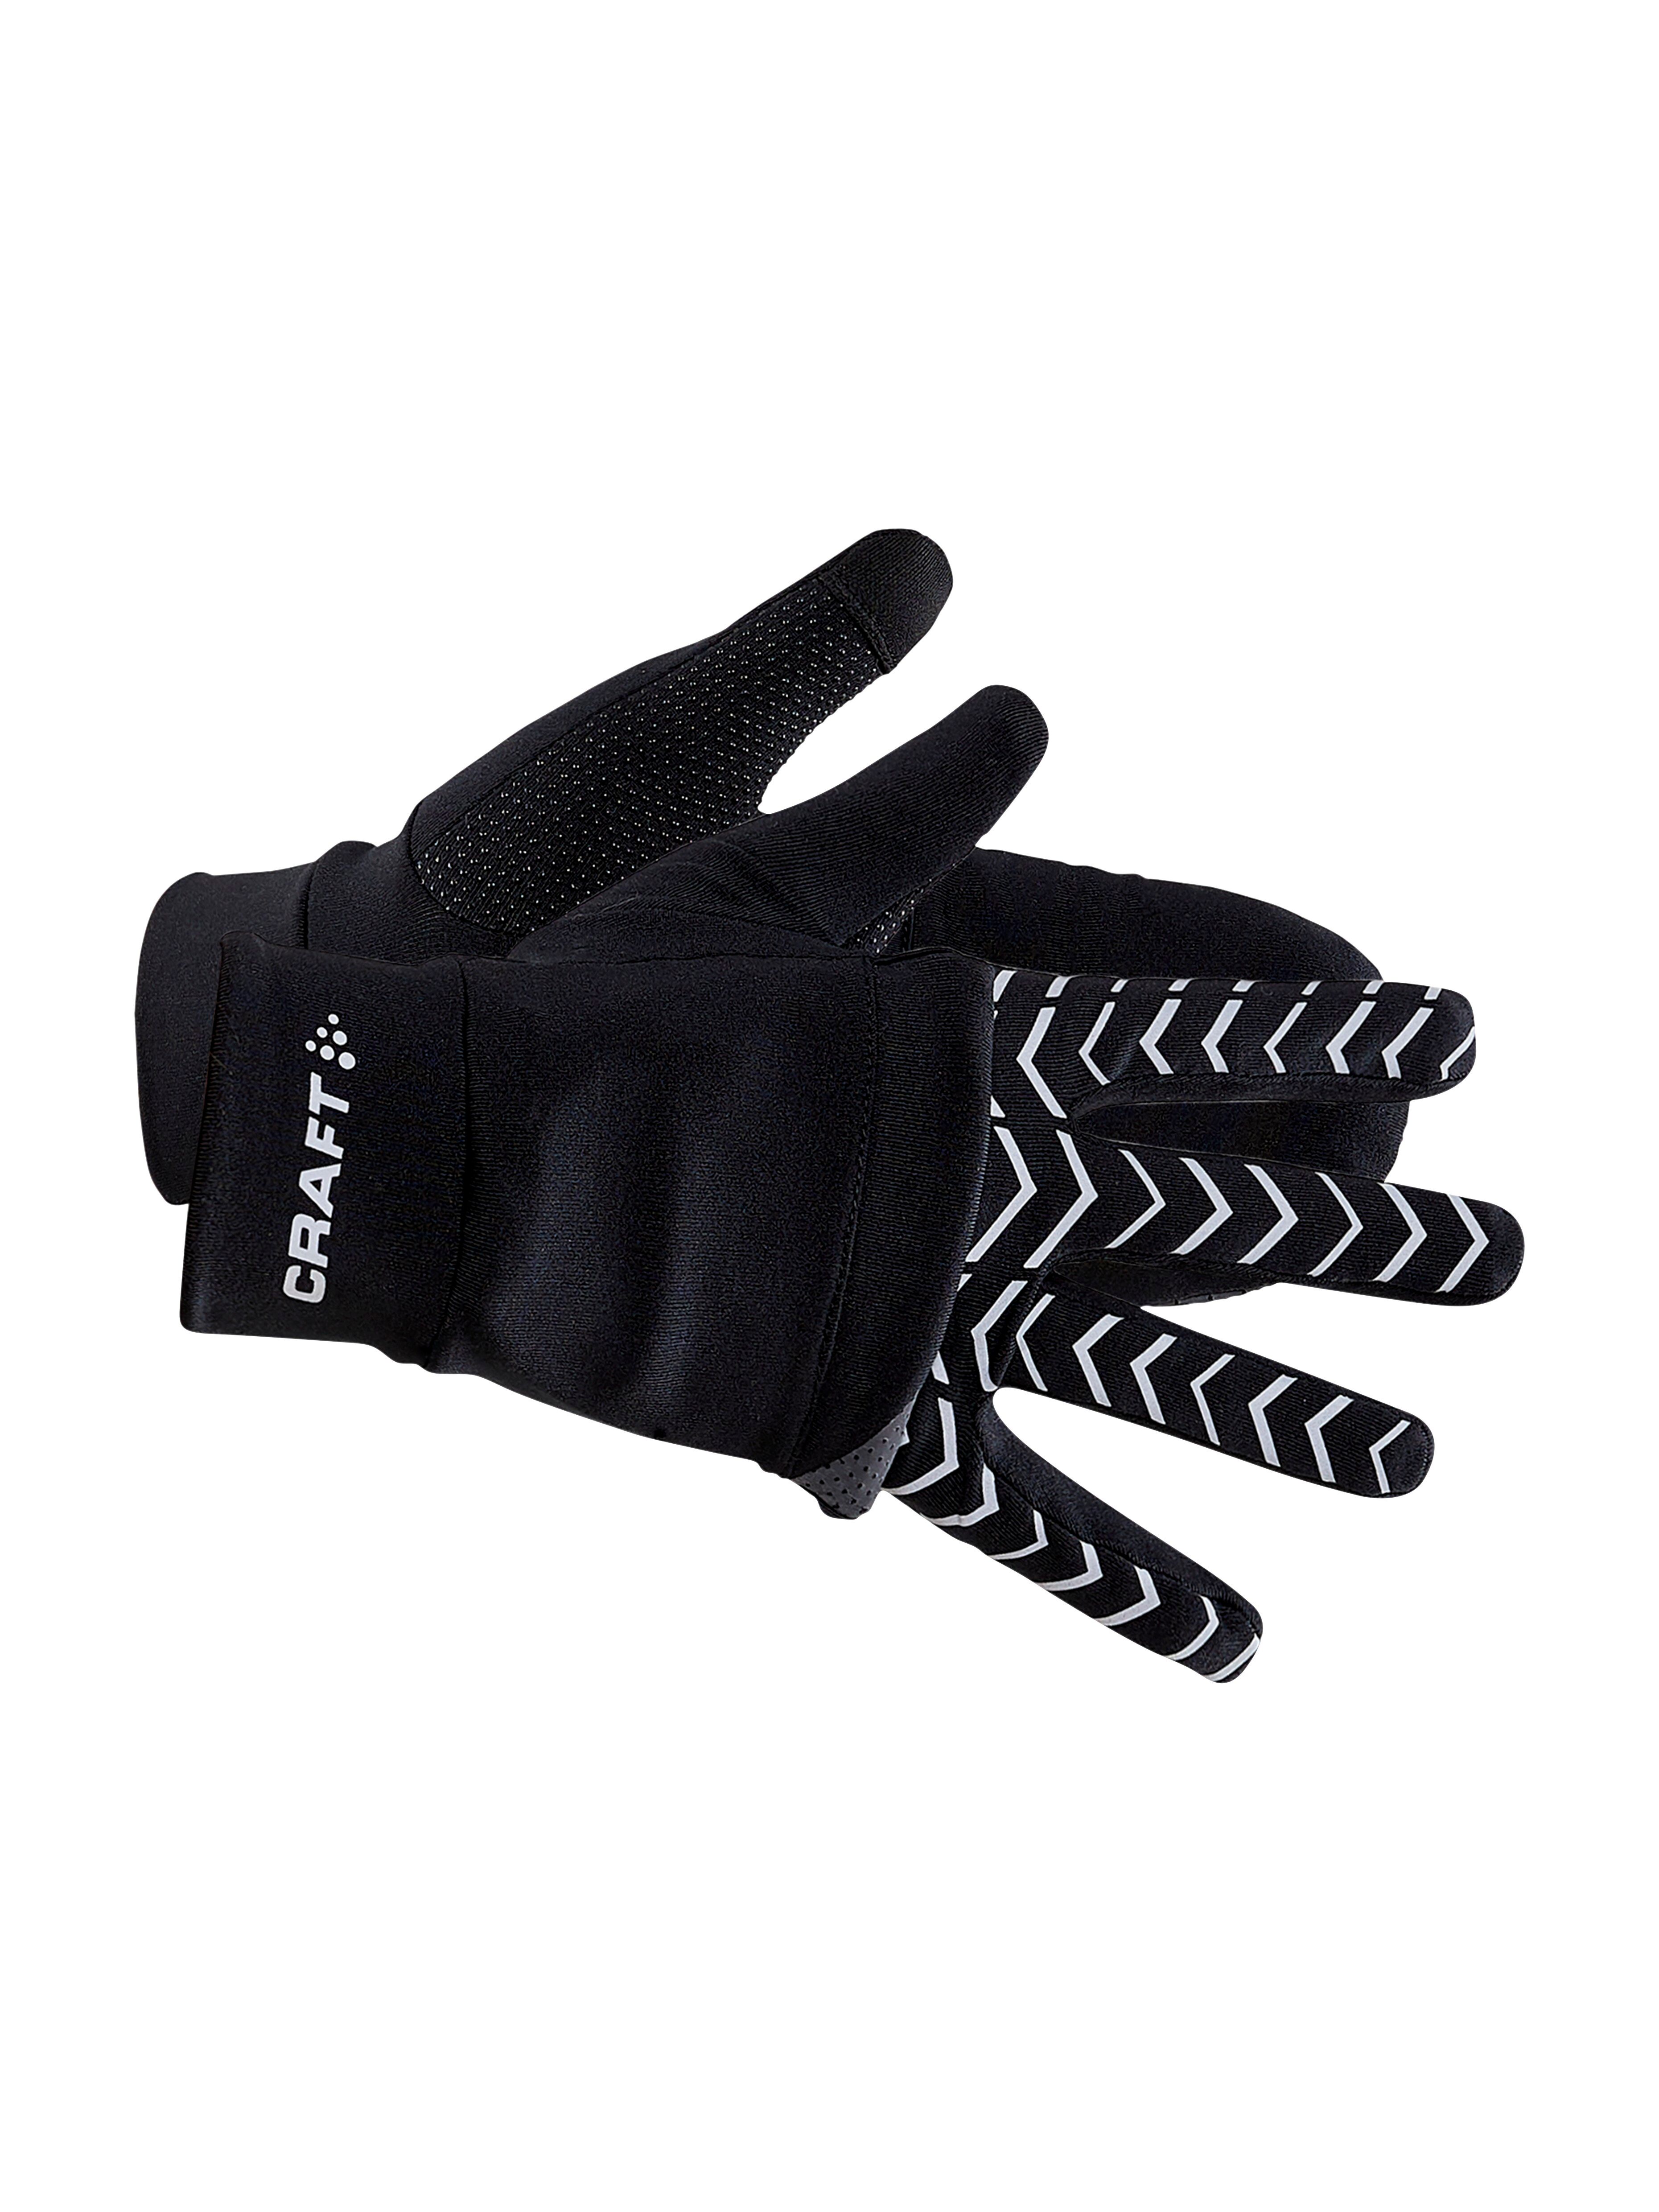 Craft Adv Lumen Hybrid Glove - Hiking gloves